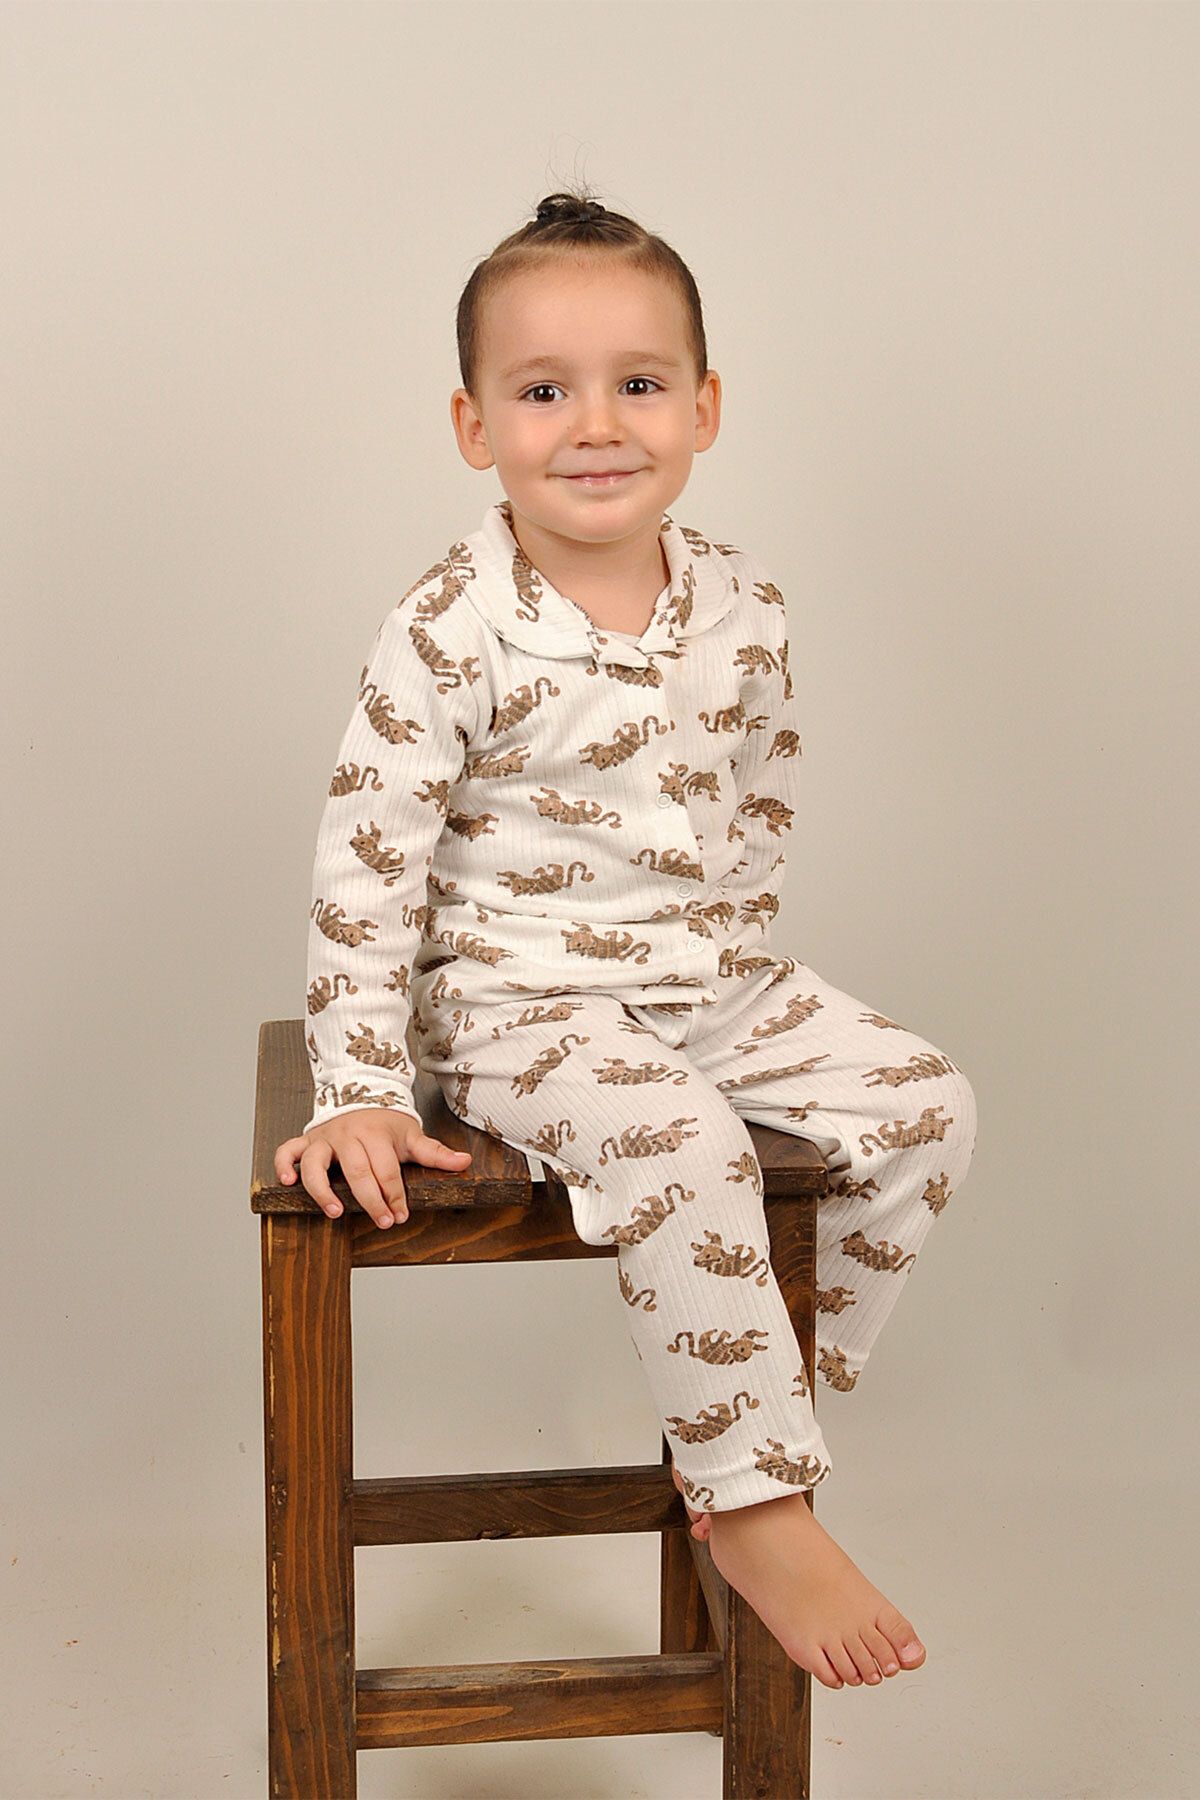 Peki Çocuk Bebek Yumusak Nefes Alan Terletmez Pamuklu Kaplan Desenli Çitçit Bebe Yaka Pijama Takimi 14809